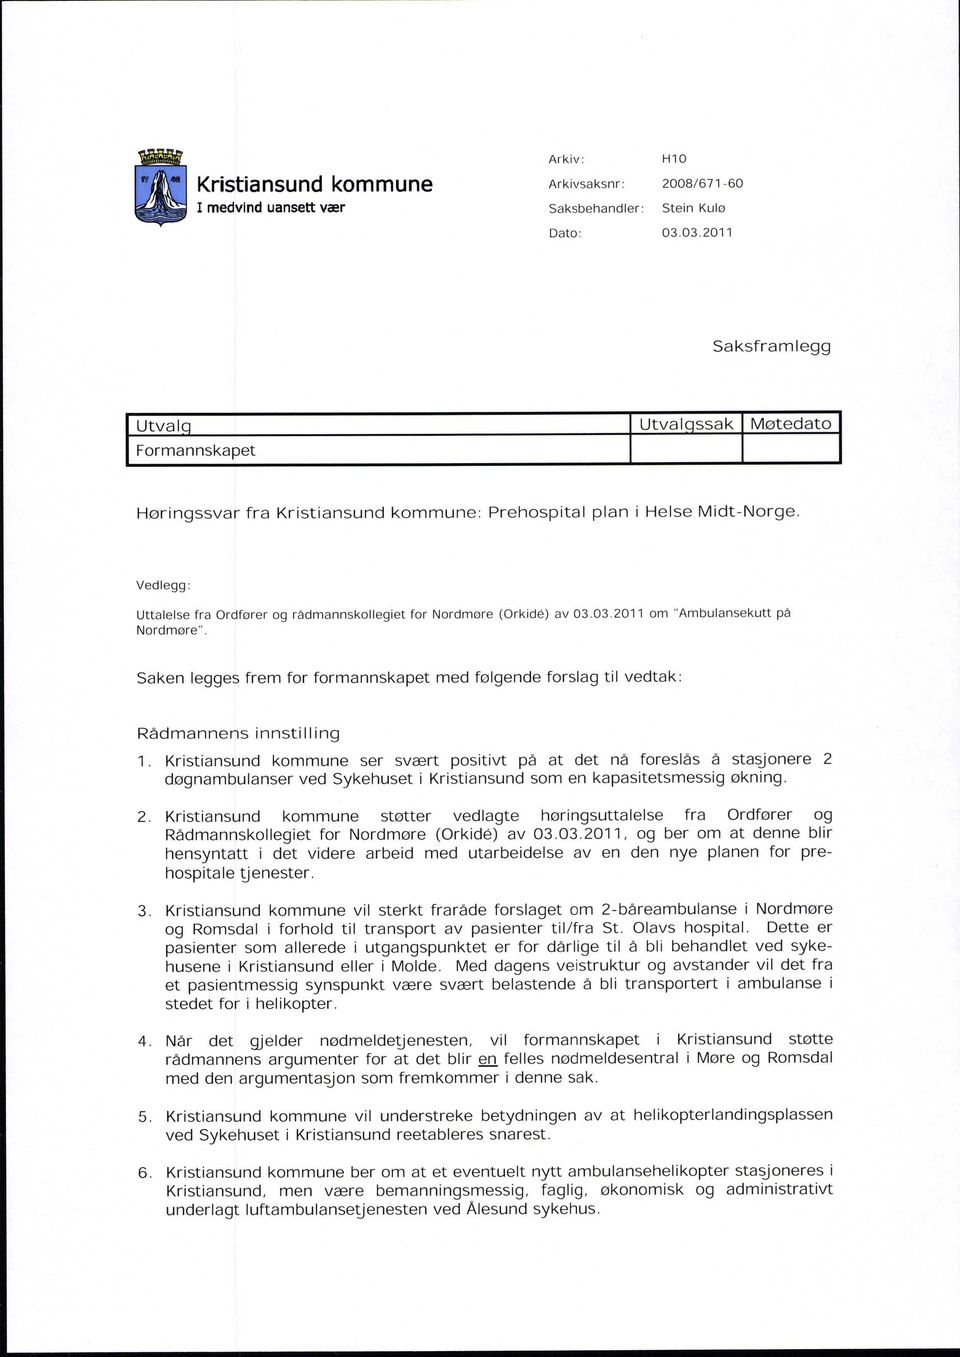 Vedlegg: Uttalelse fra Ordfører og rådmannskollegiet for Nordmøre (Orkid@) av 03.03.2011 om "Ambulansekutt på Nordmøre".